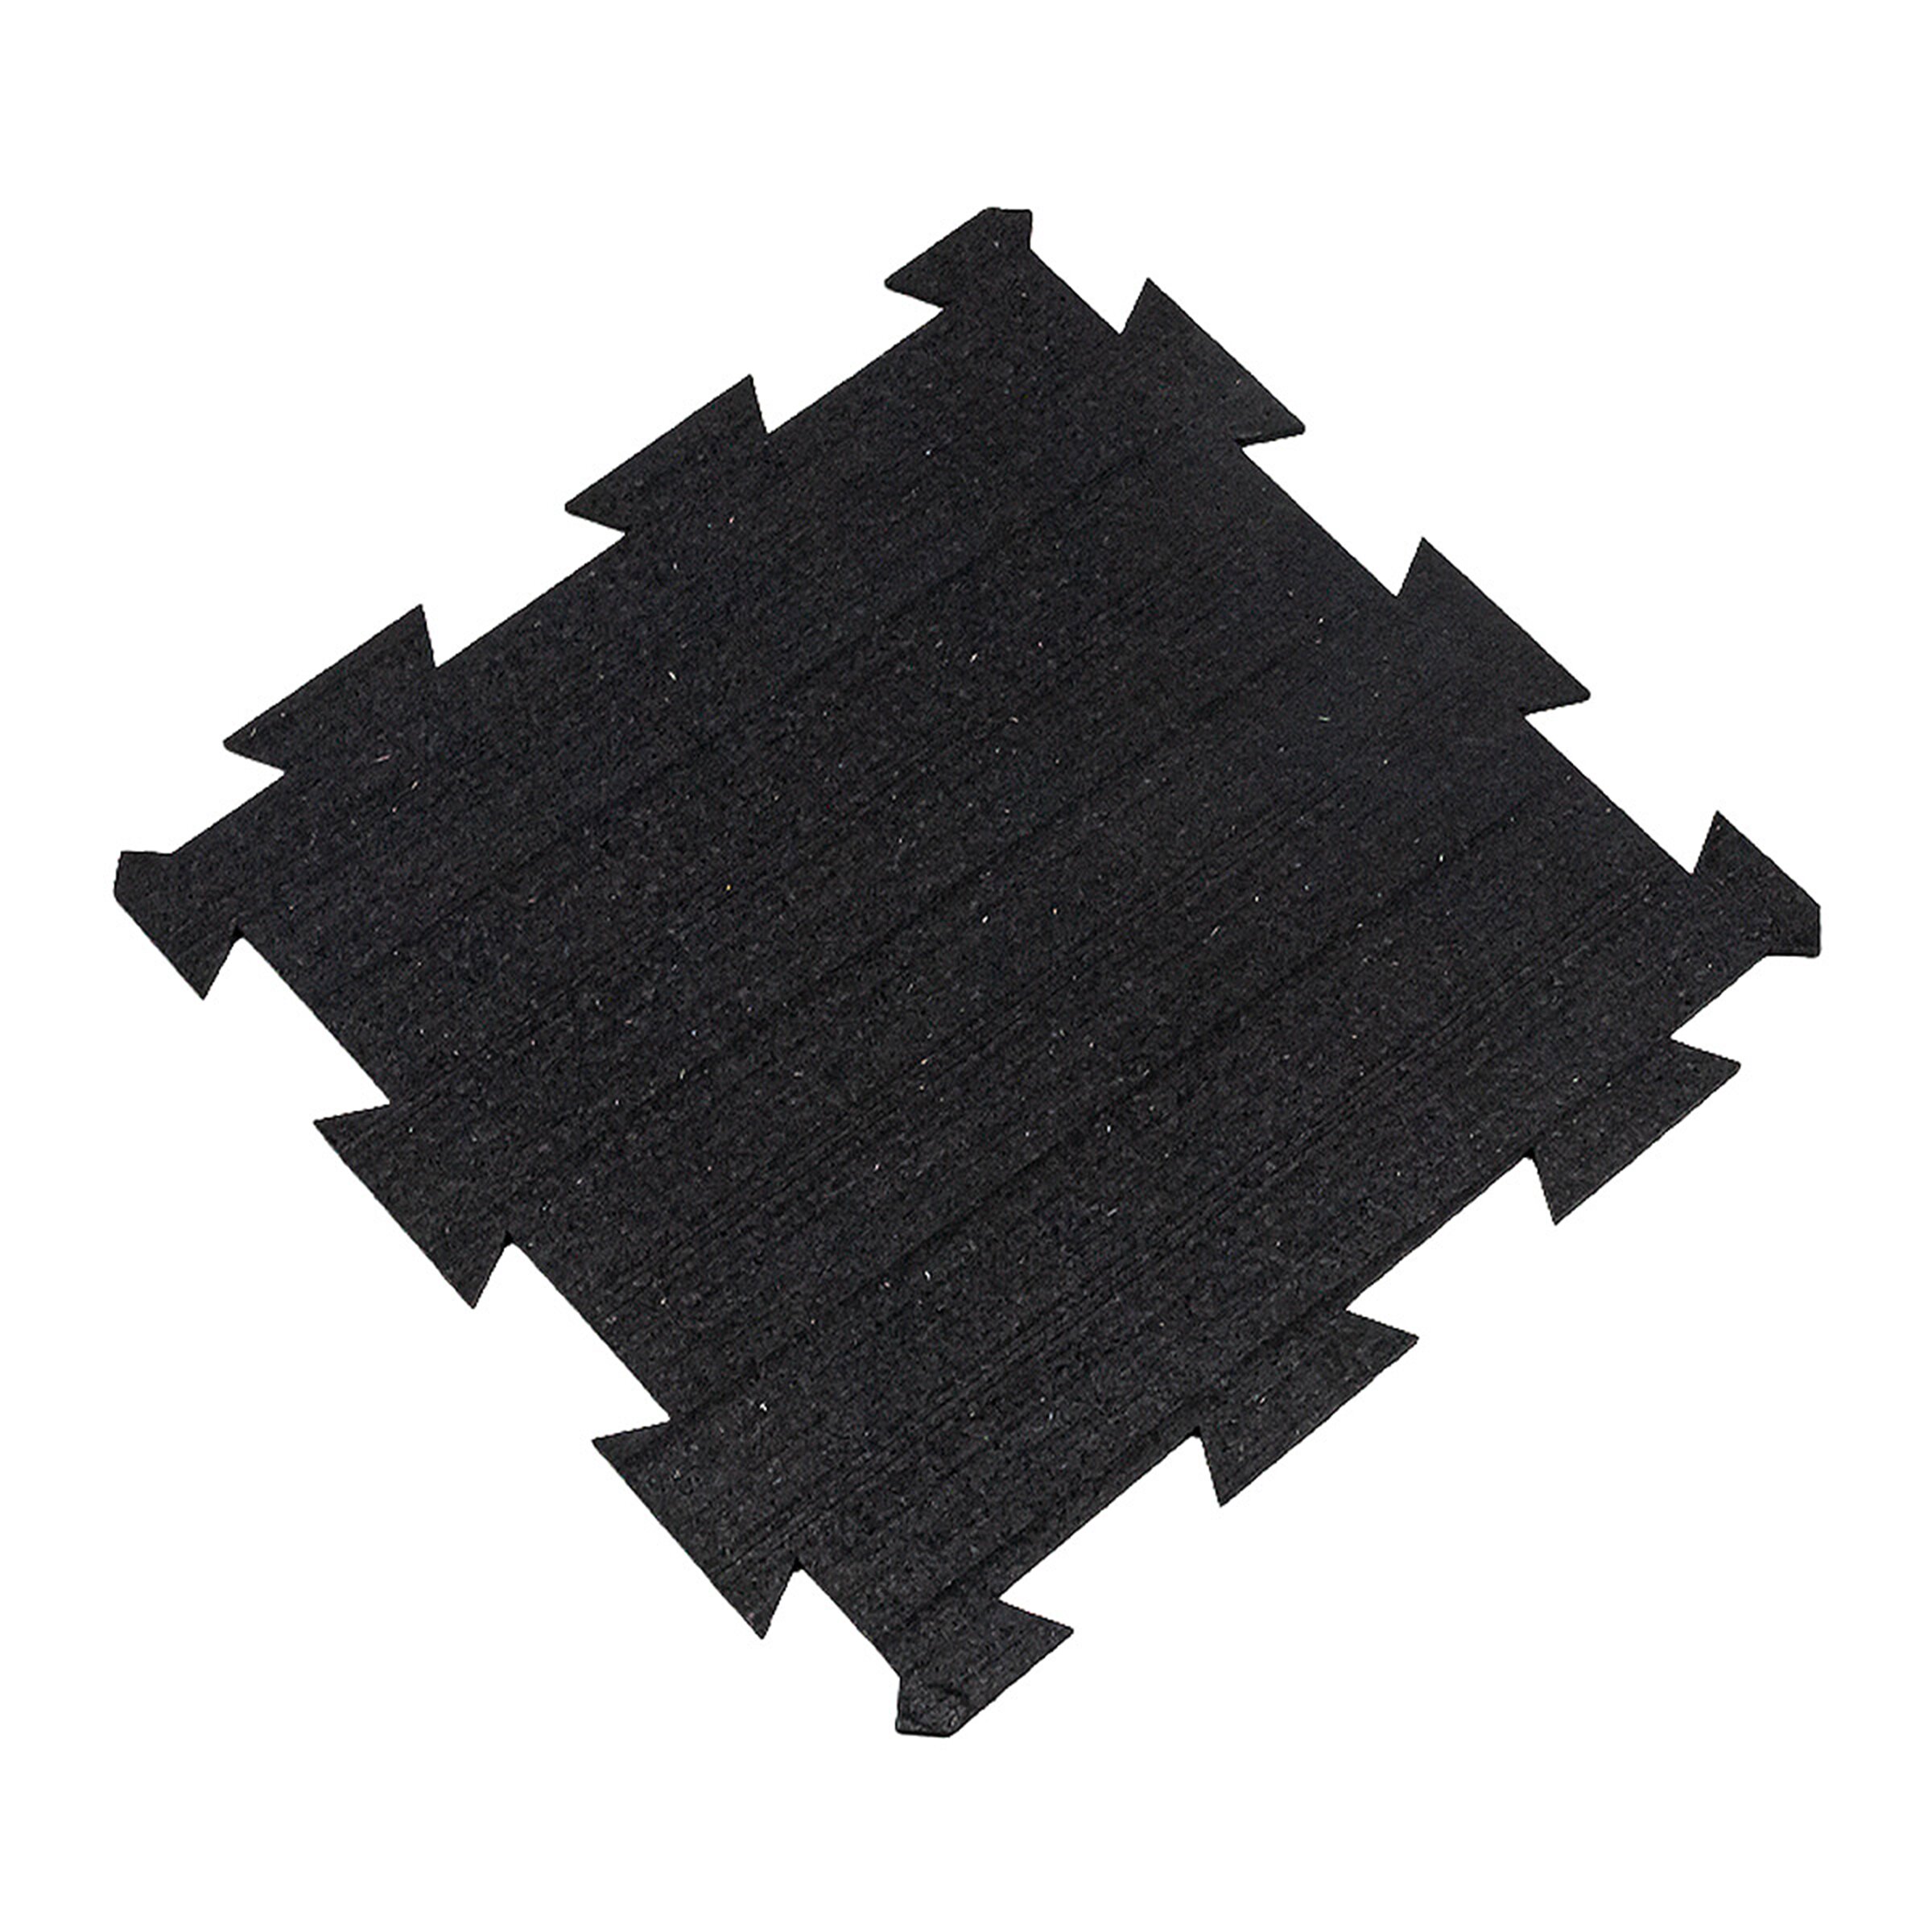 Černá gumová puzzle modulová dlažba FLOMA SF1050 FitFlo - délka 50 cm, šířka 50 cm, výška 1 cm